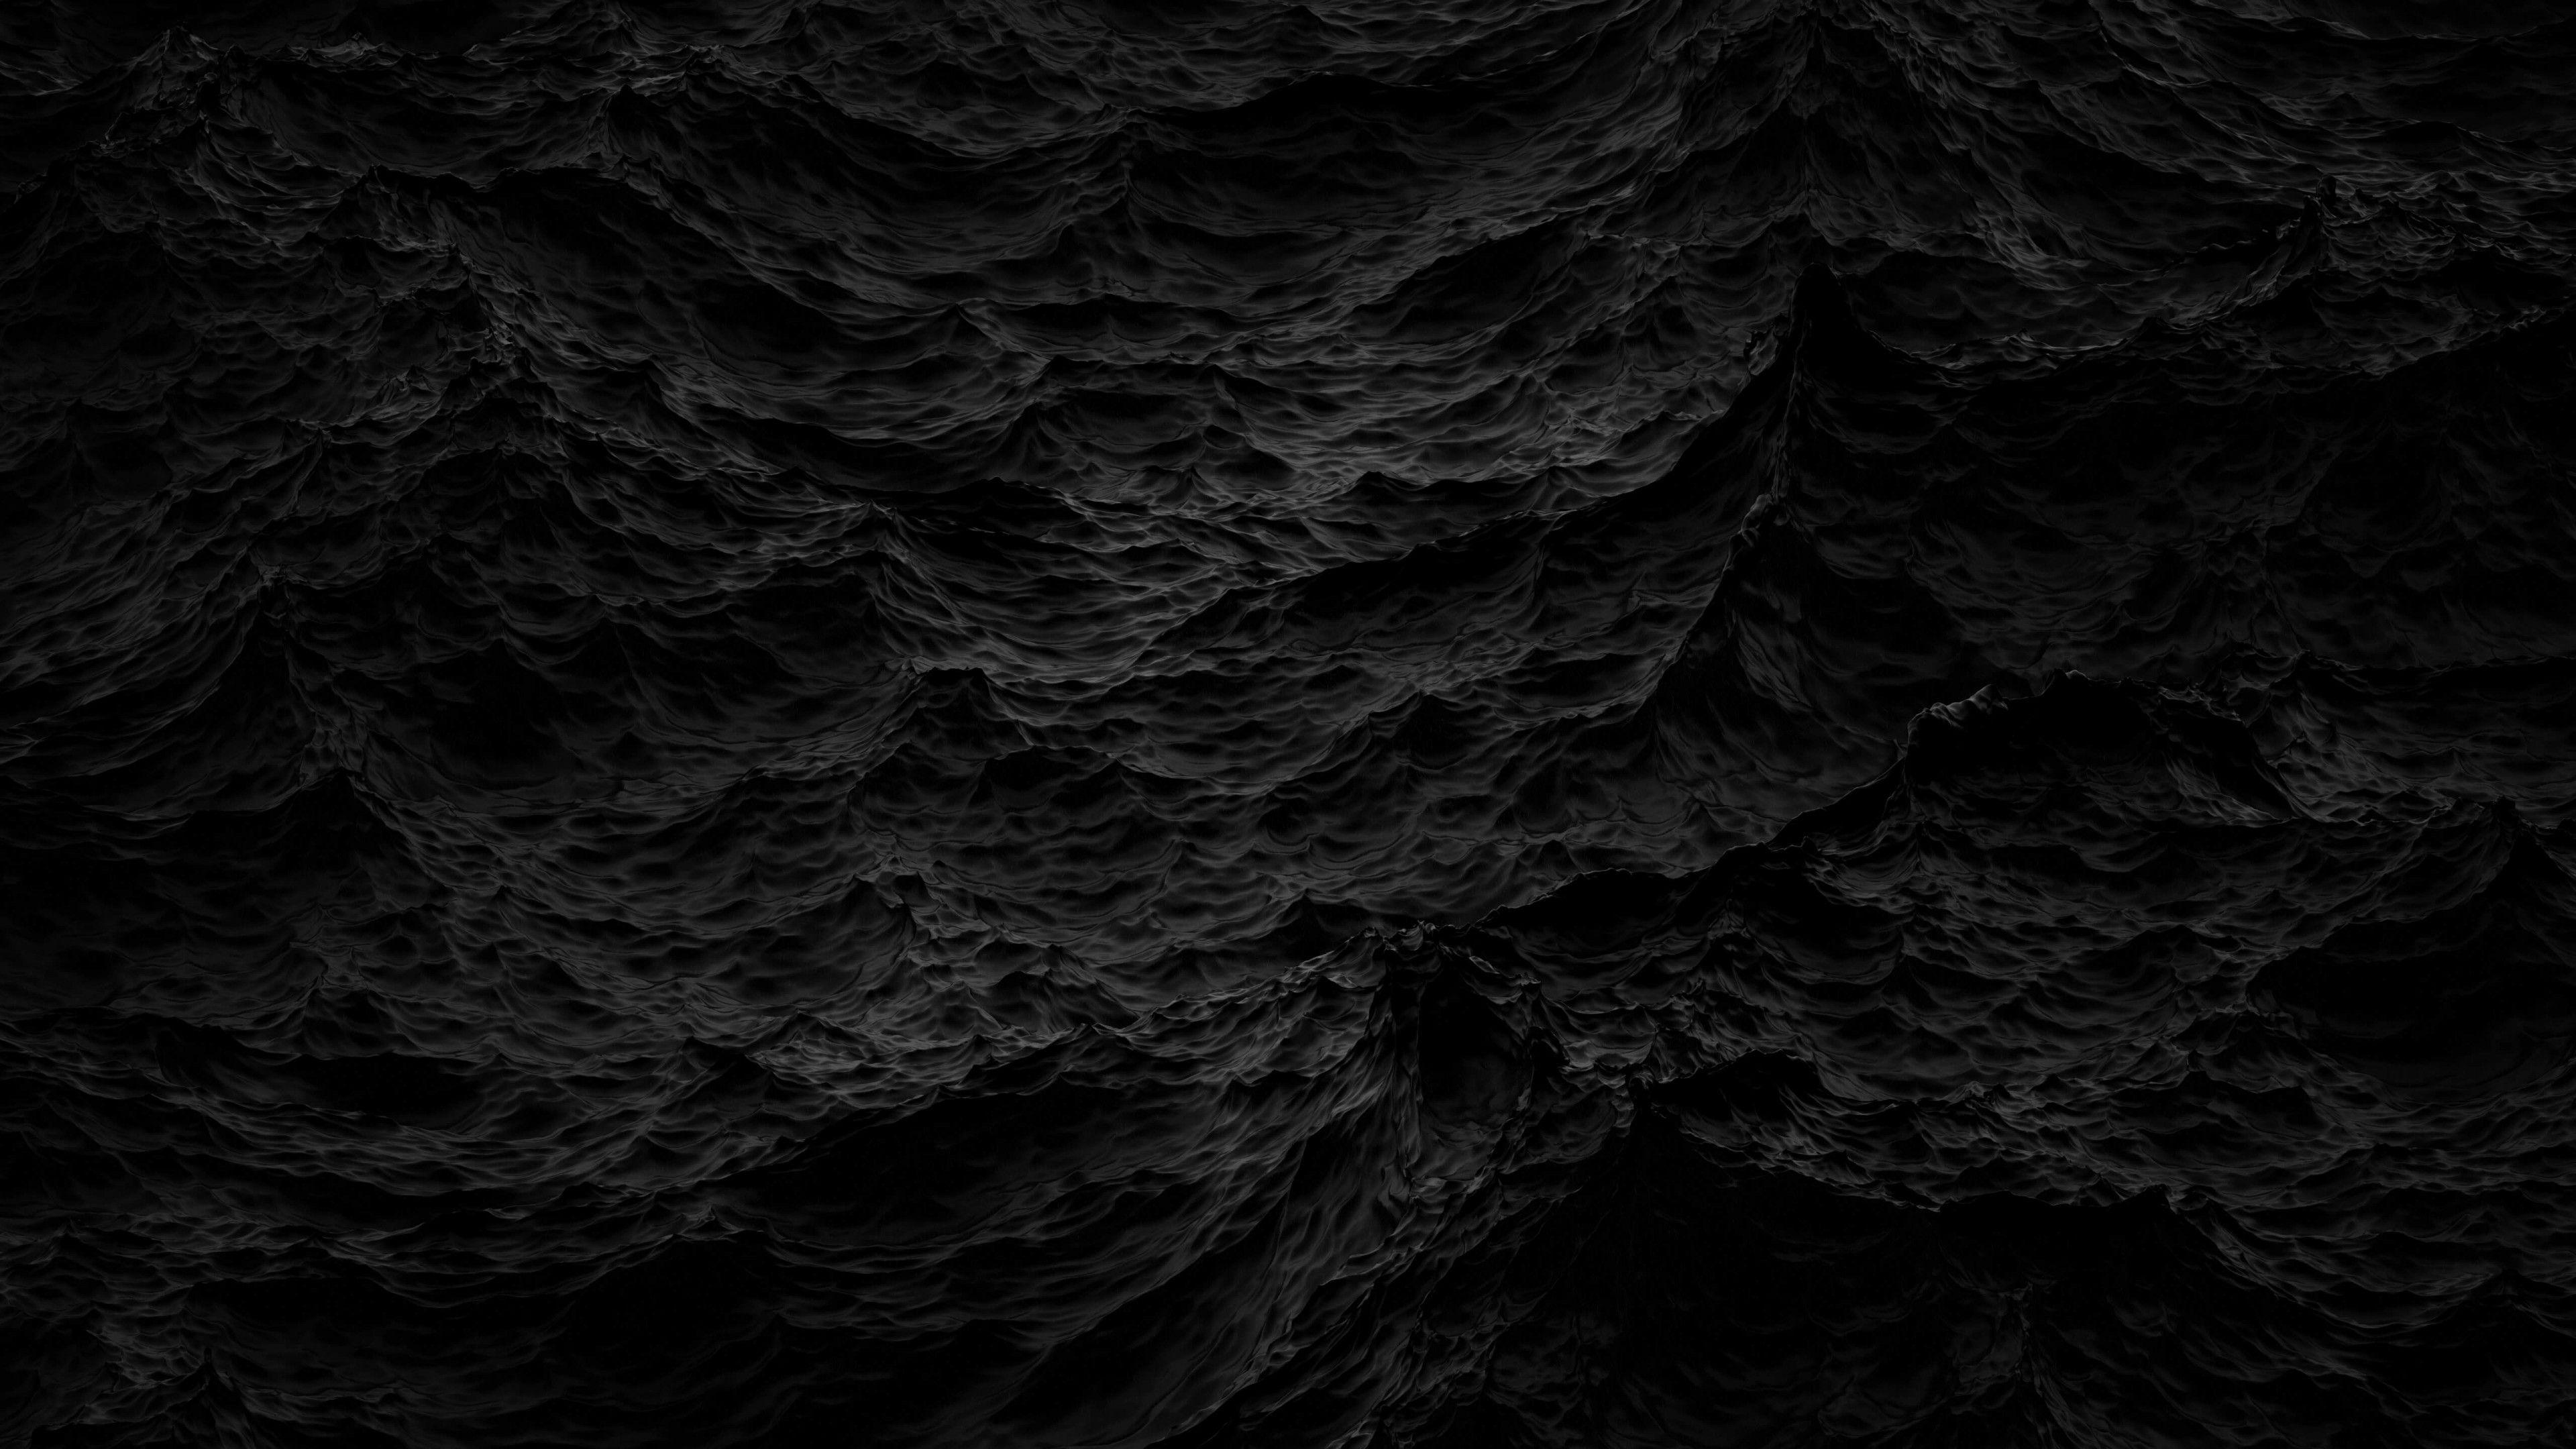 Black Waves Wallpaper for DeskK 3840x2160